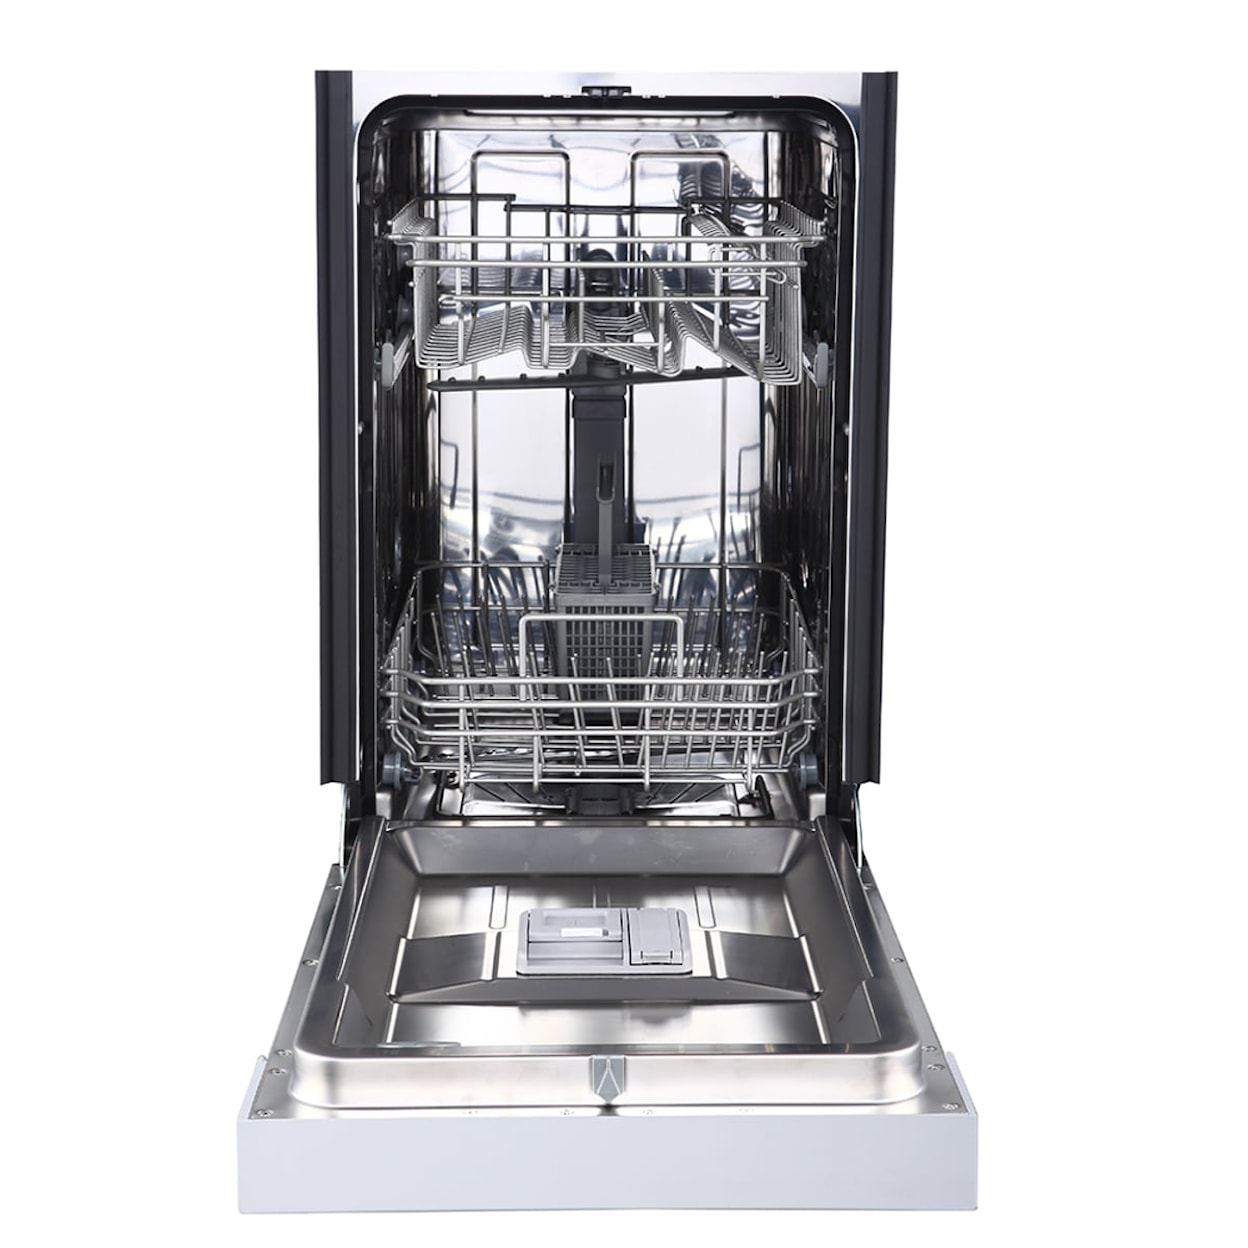 GE Appliances Dishwashers Front Control Dishwasher